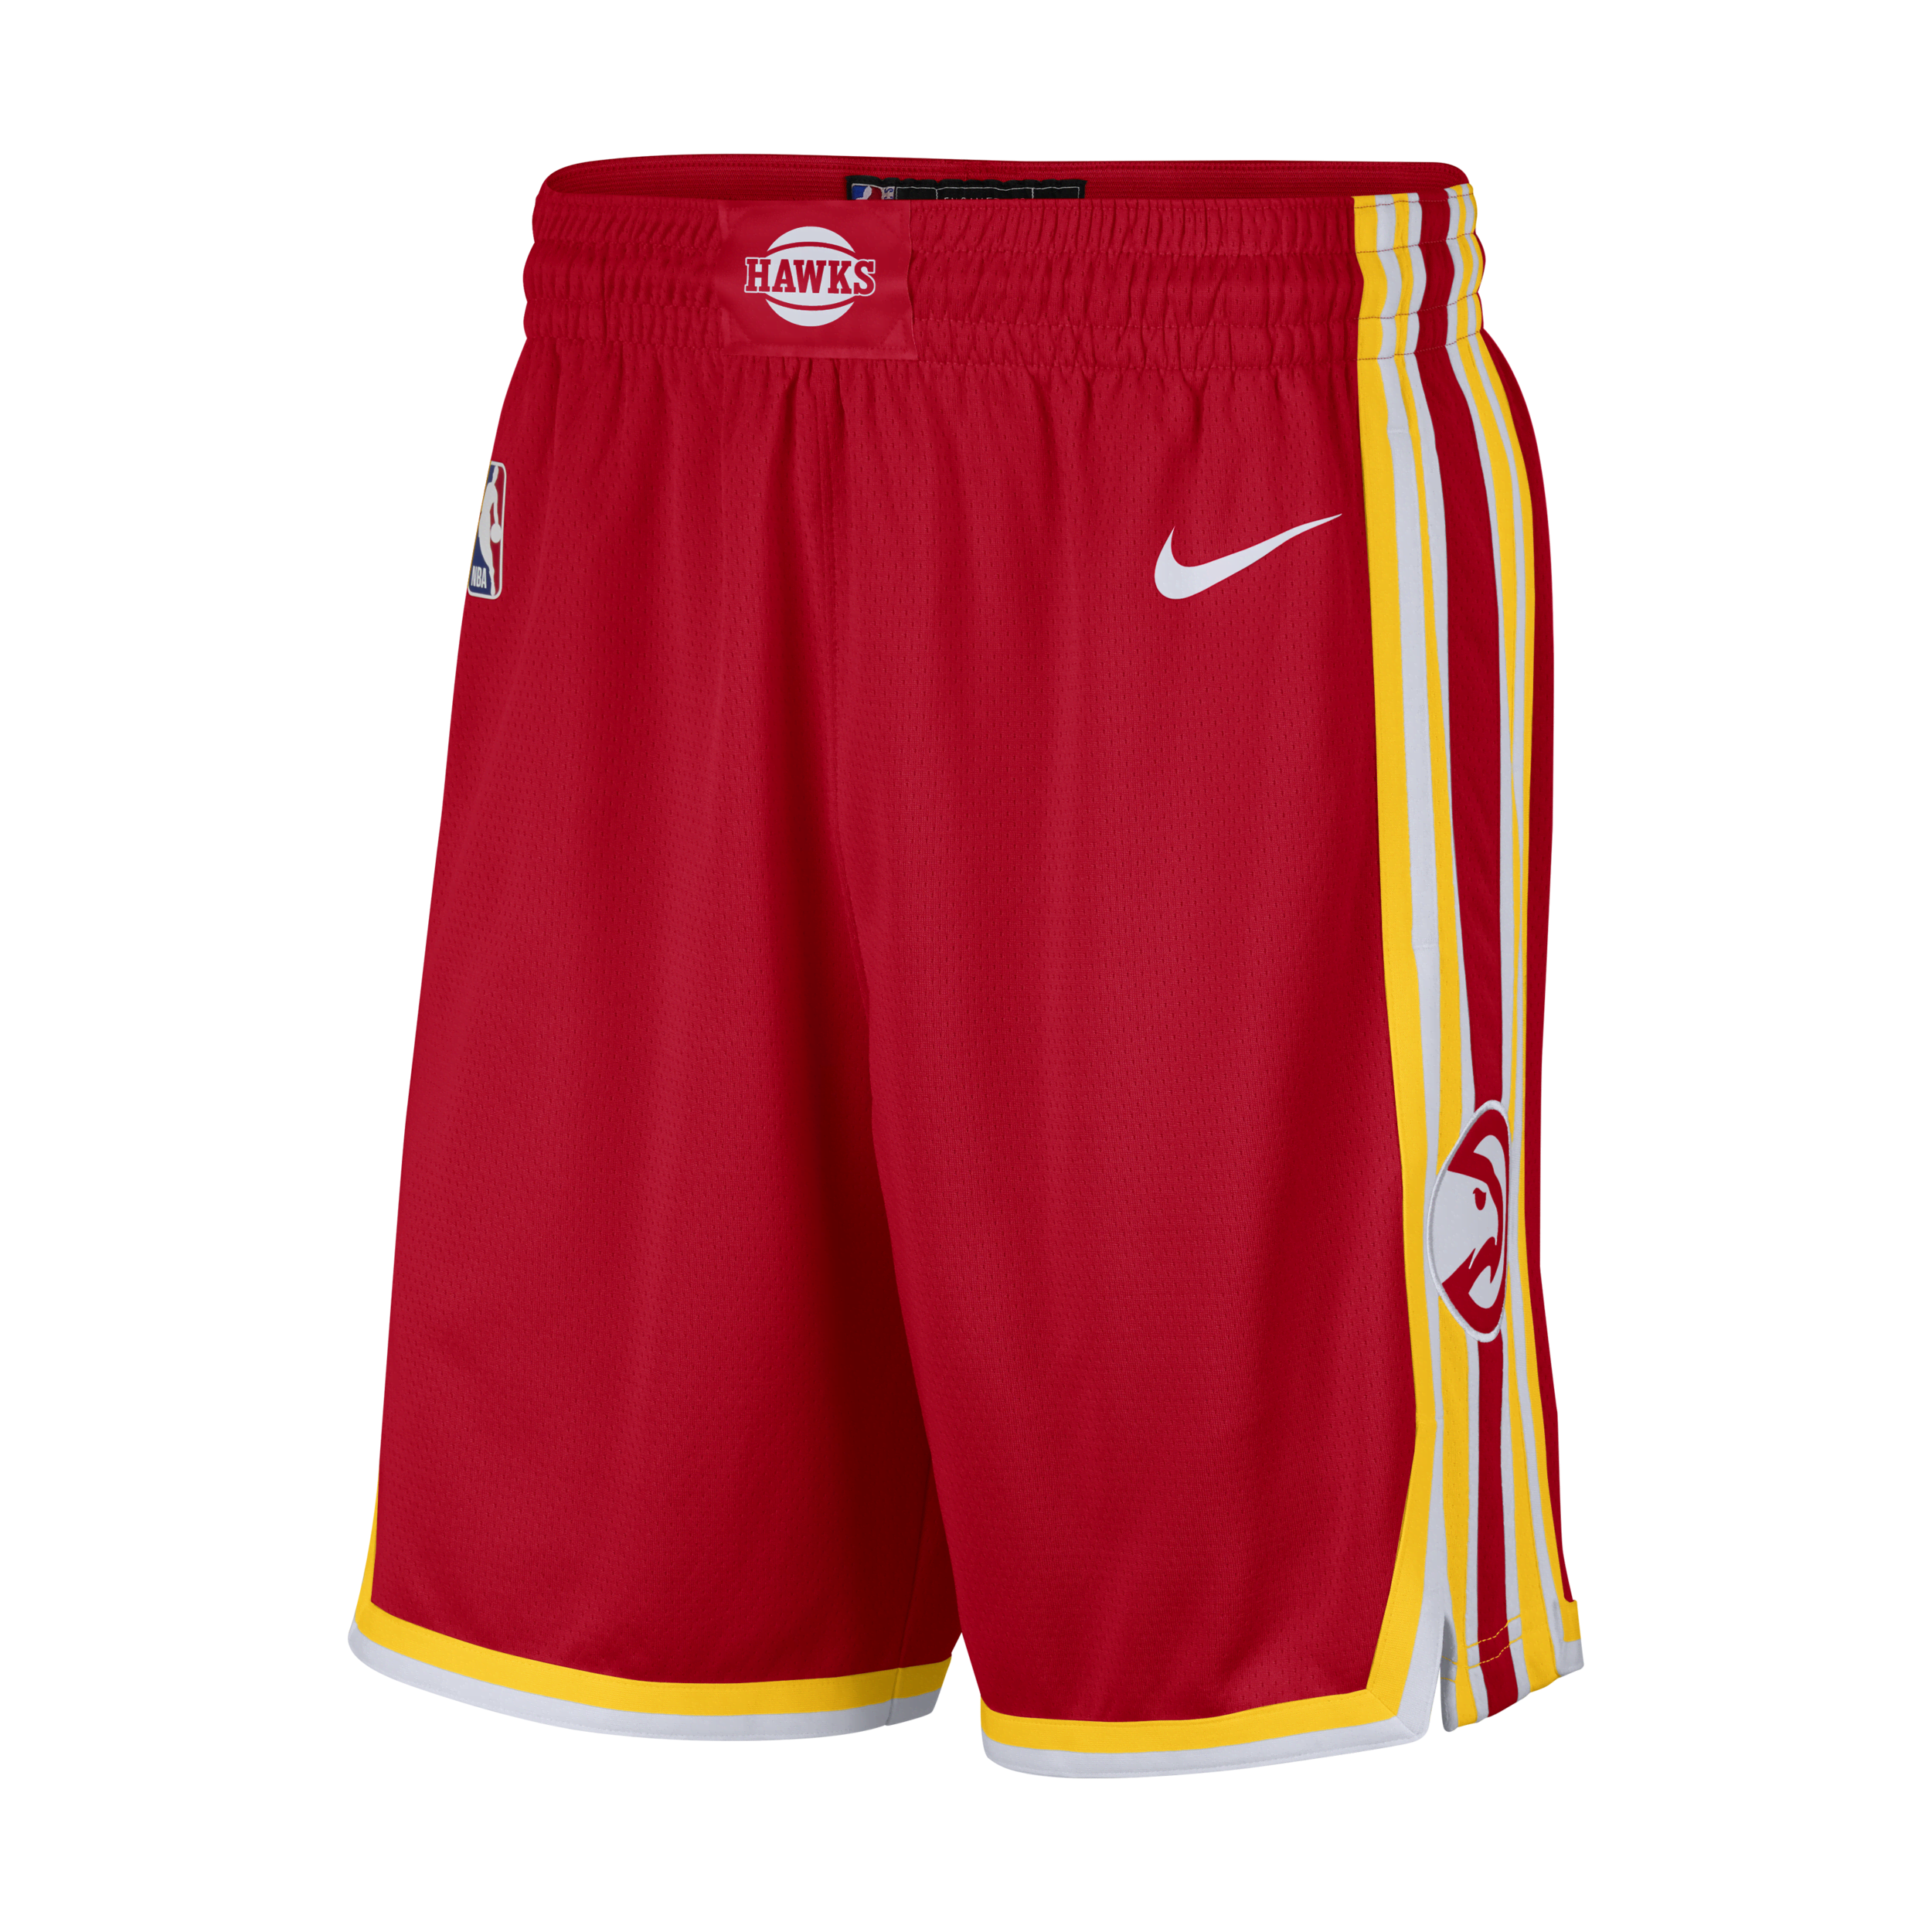 Hawks Icon Edition 2020 Pantalón corto Nike NBA Swingman - Hombre - Rojo